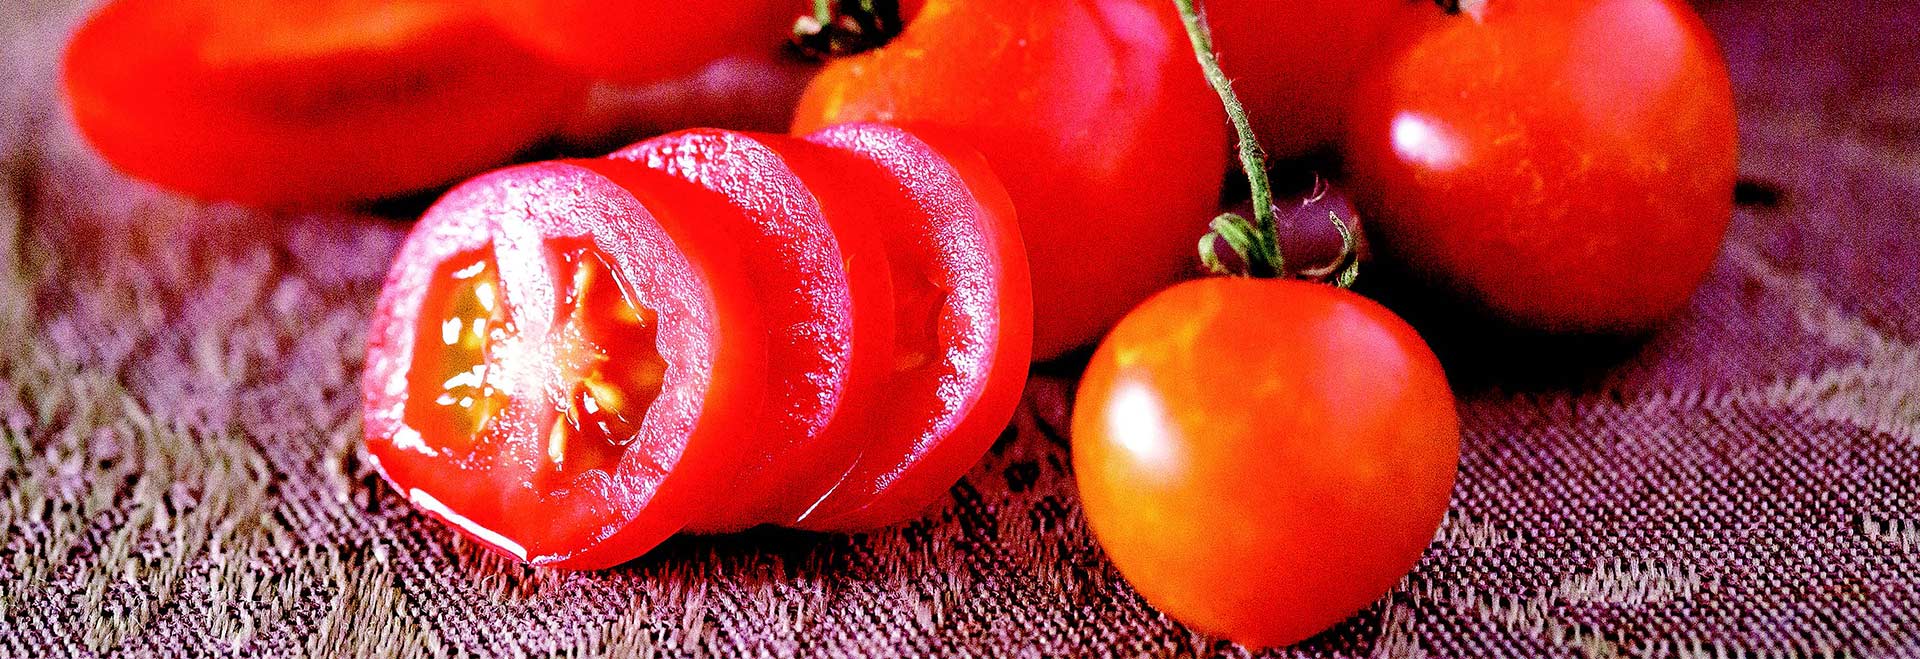 Audiodescrição: foto de tomates em cima de uma mesa. Imagem 1 de 1